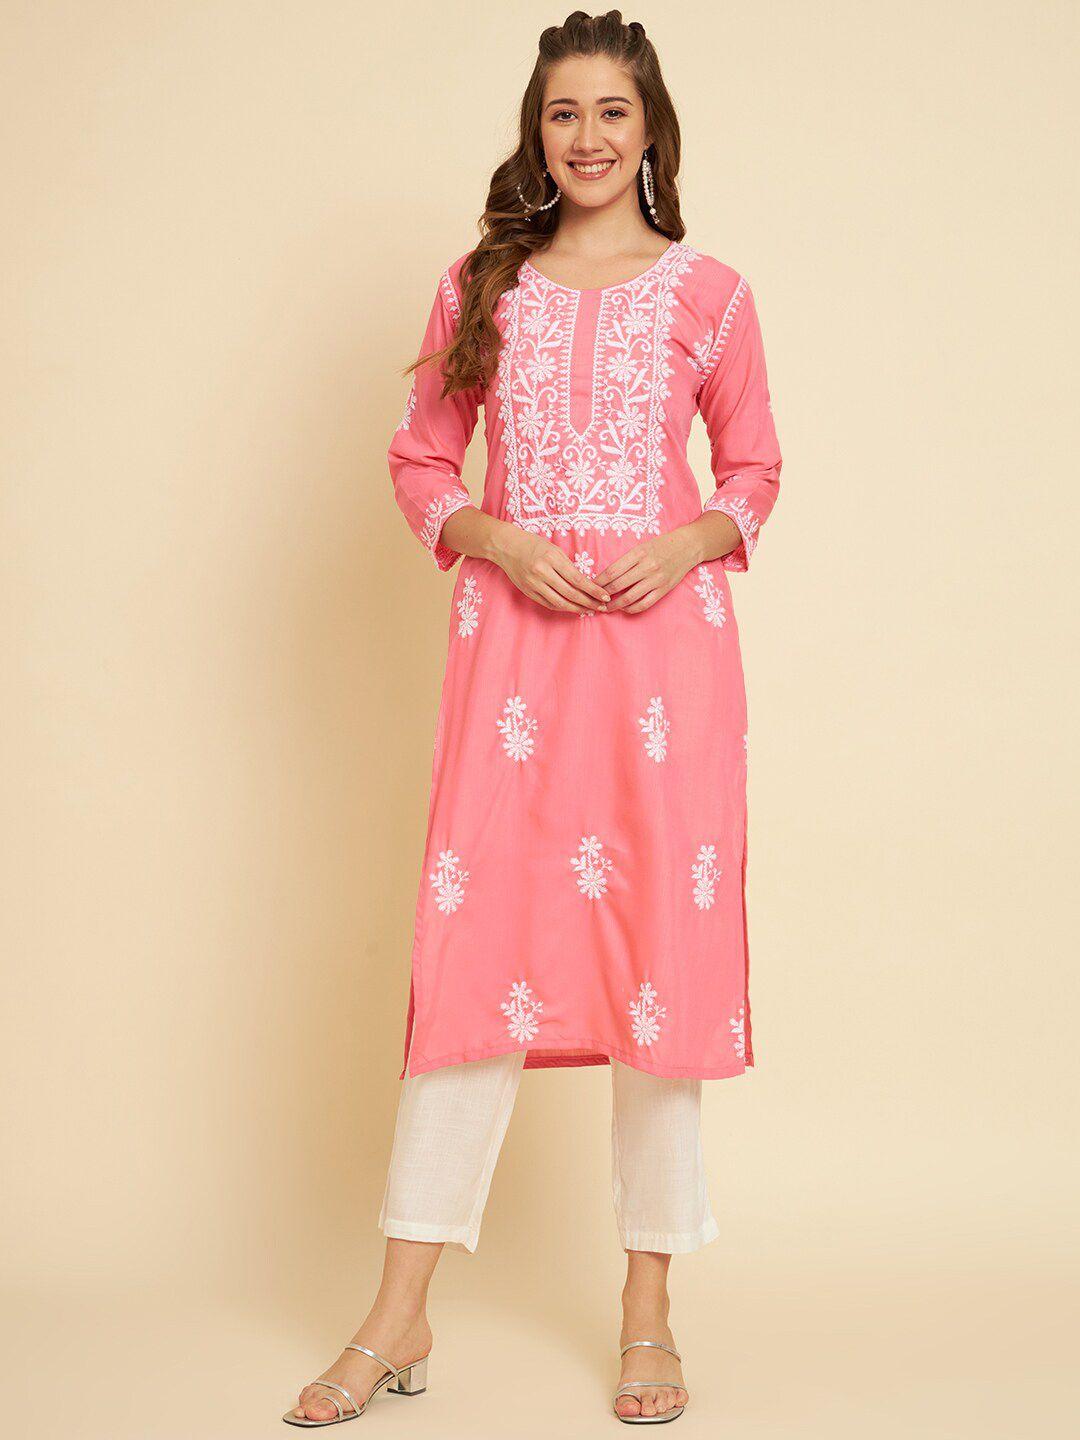 vairagee women pink ethnic motifs embroidered thread work kurta